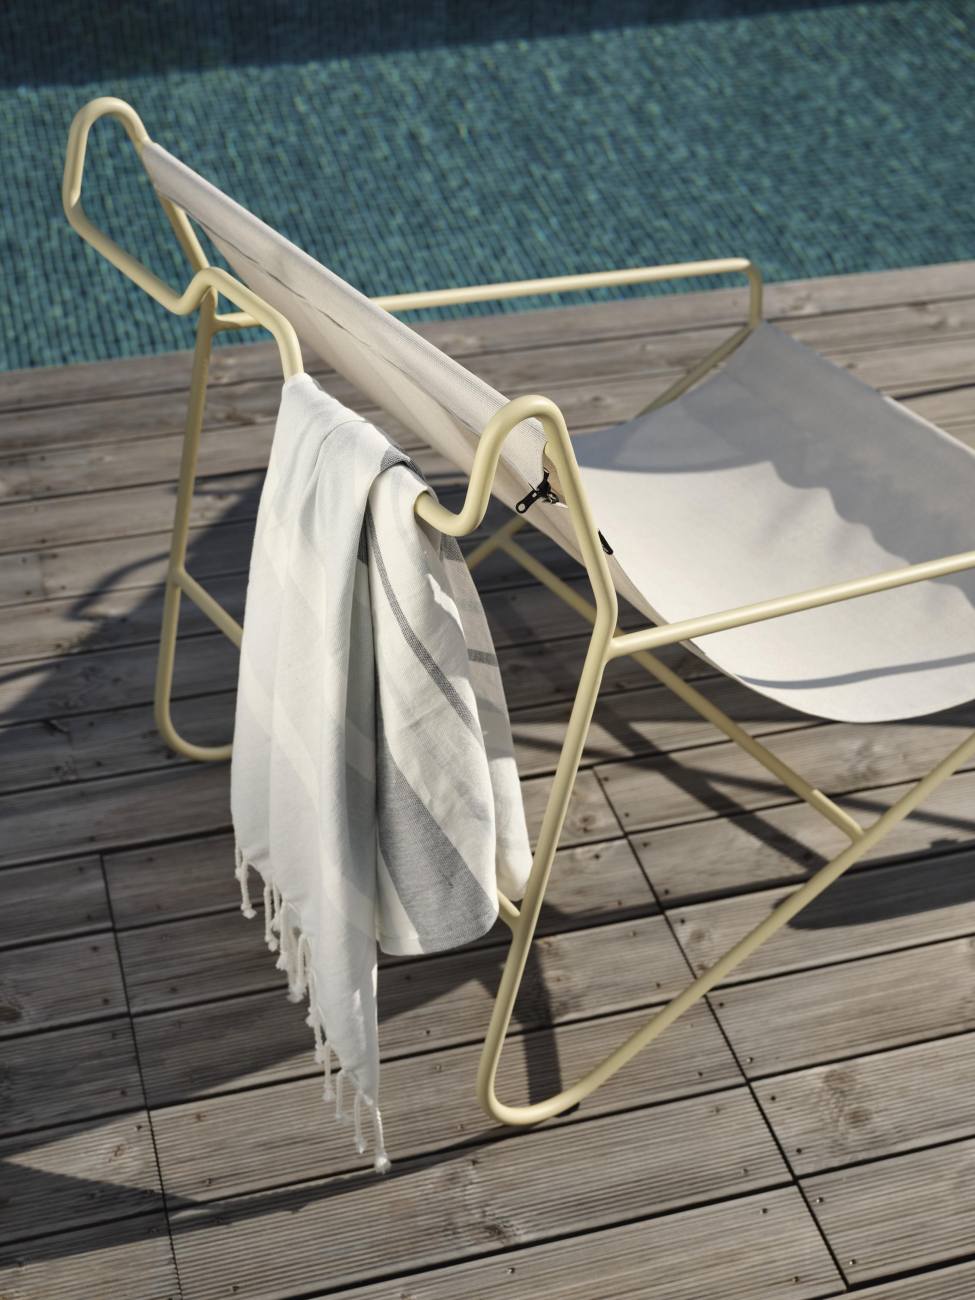 Der Gartensessel Poul überzeugt mit seinem modernen Design. Gefertigt wurde er aus Stoff, welcher einen weißen Farbton besitzt. Das Gestell ist aus Metall und hat eine gelbe Farbe. Die Sitzhöhe des Sessels beträgt 36 cm.